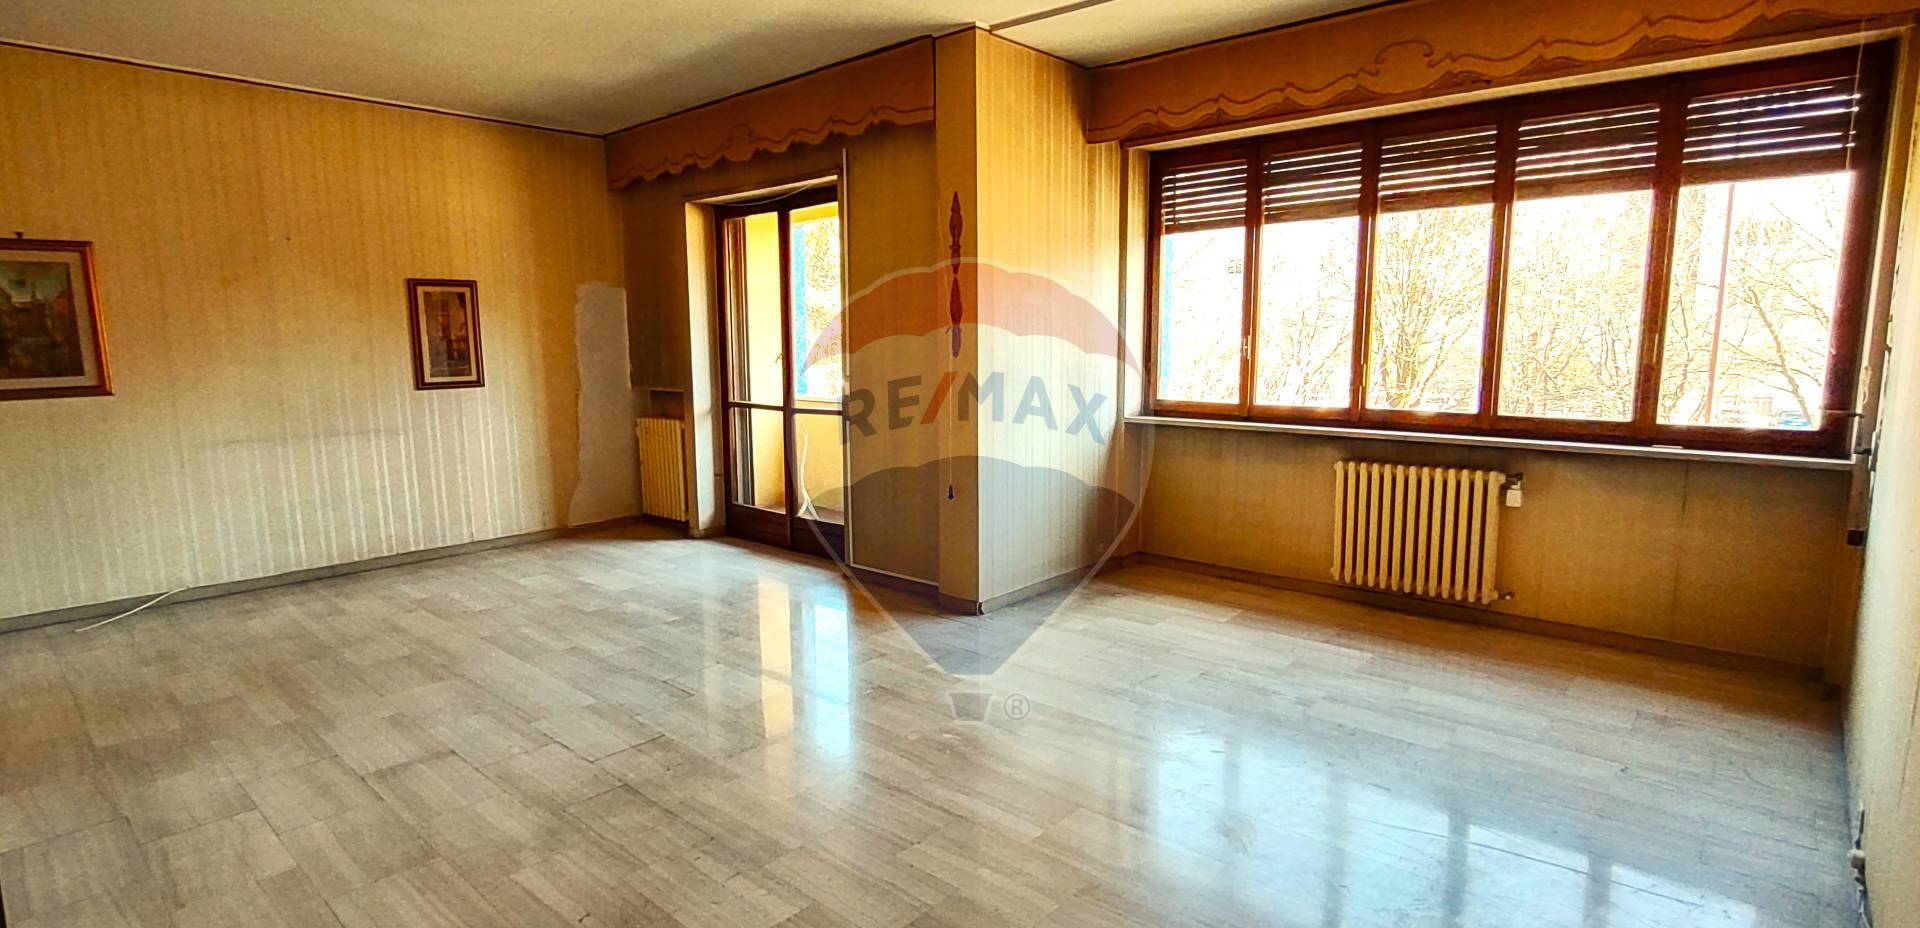 Appartamento in vendita a Pavia, 7 locali, zona Località: Ticinello-Stazione, prezzo € 515.000 | PortaleAgenzieImmobiliari.it